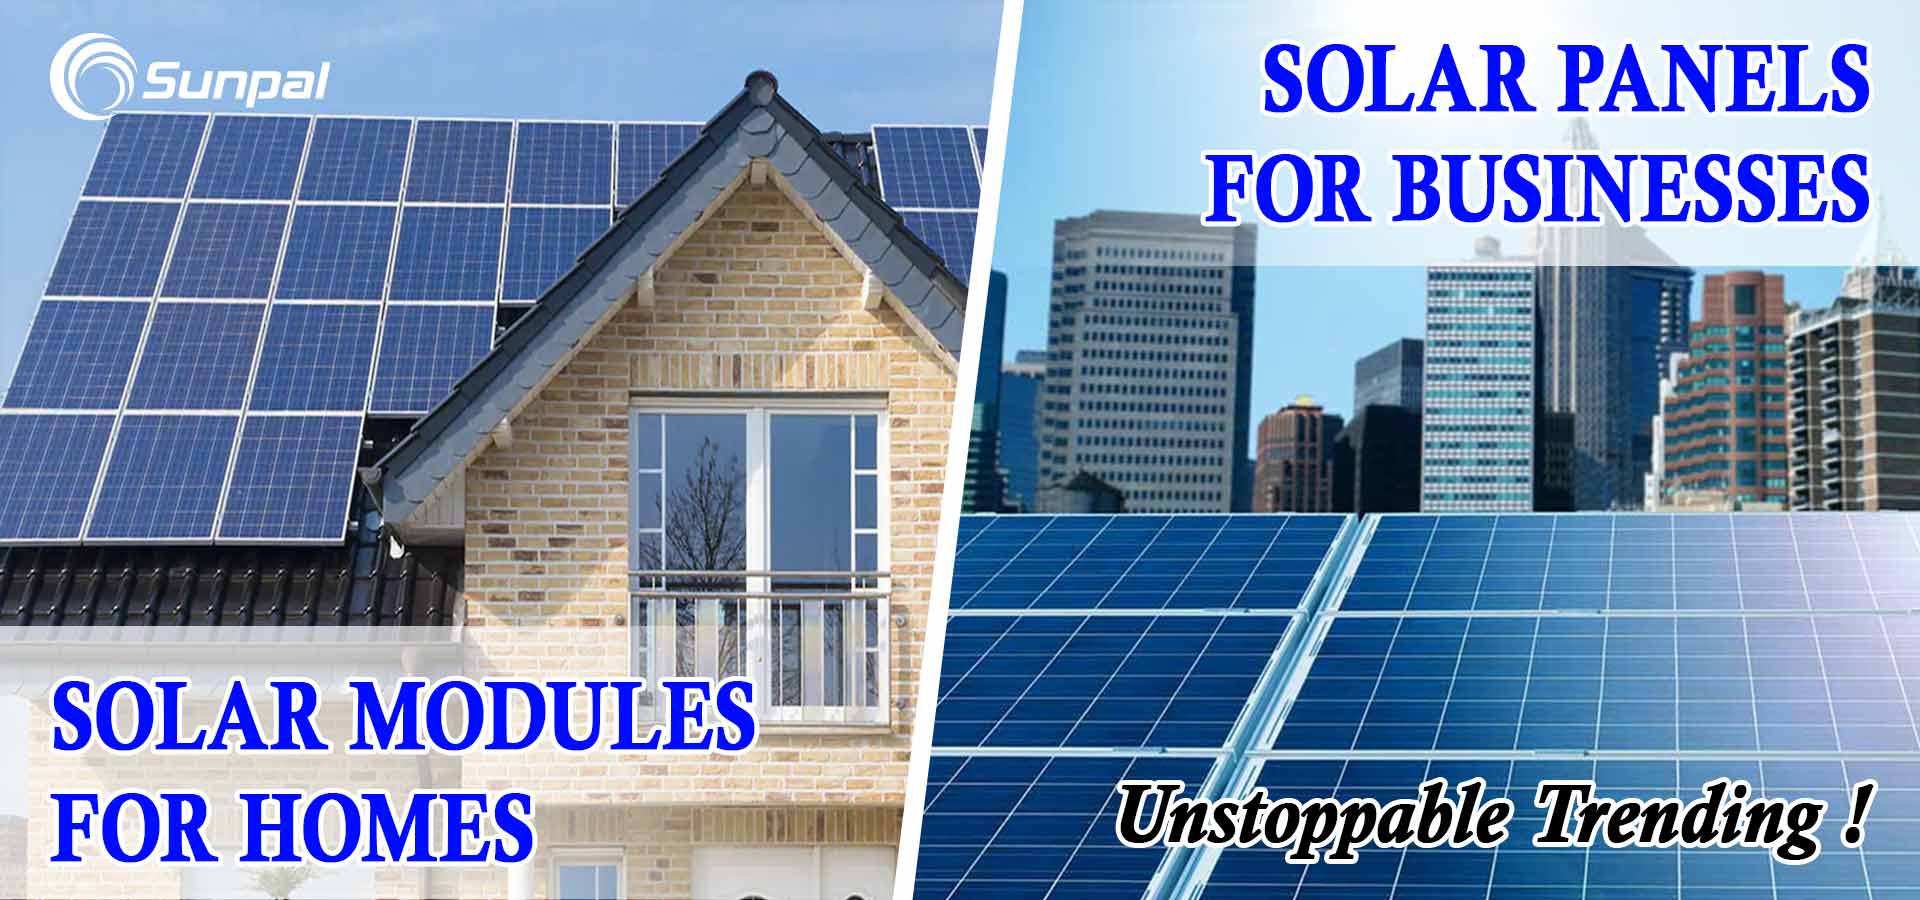 Huseiere og entreprenører: Bruk solcellepaneler - hvorfor gjøre dette
        